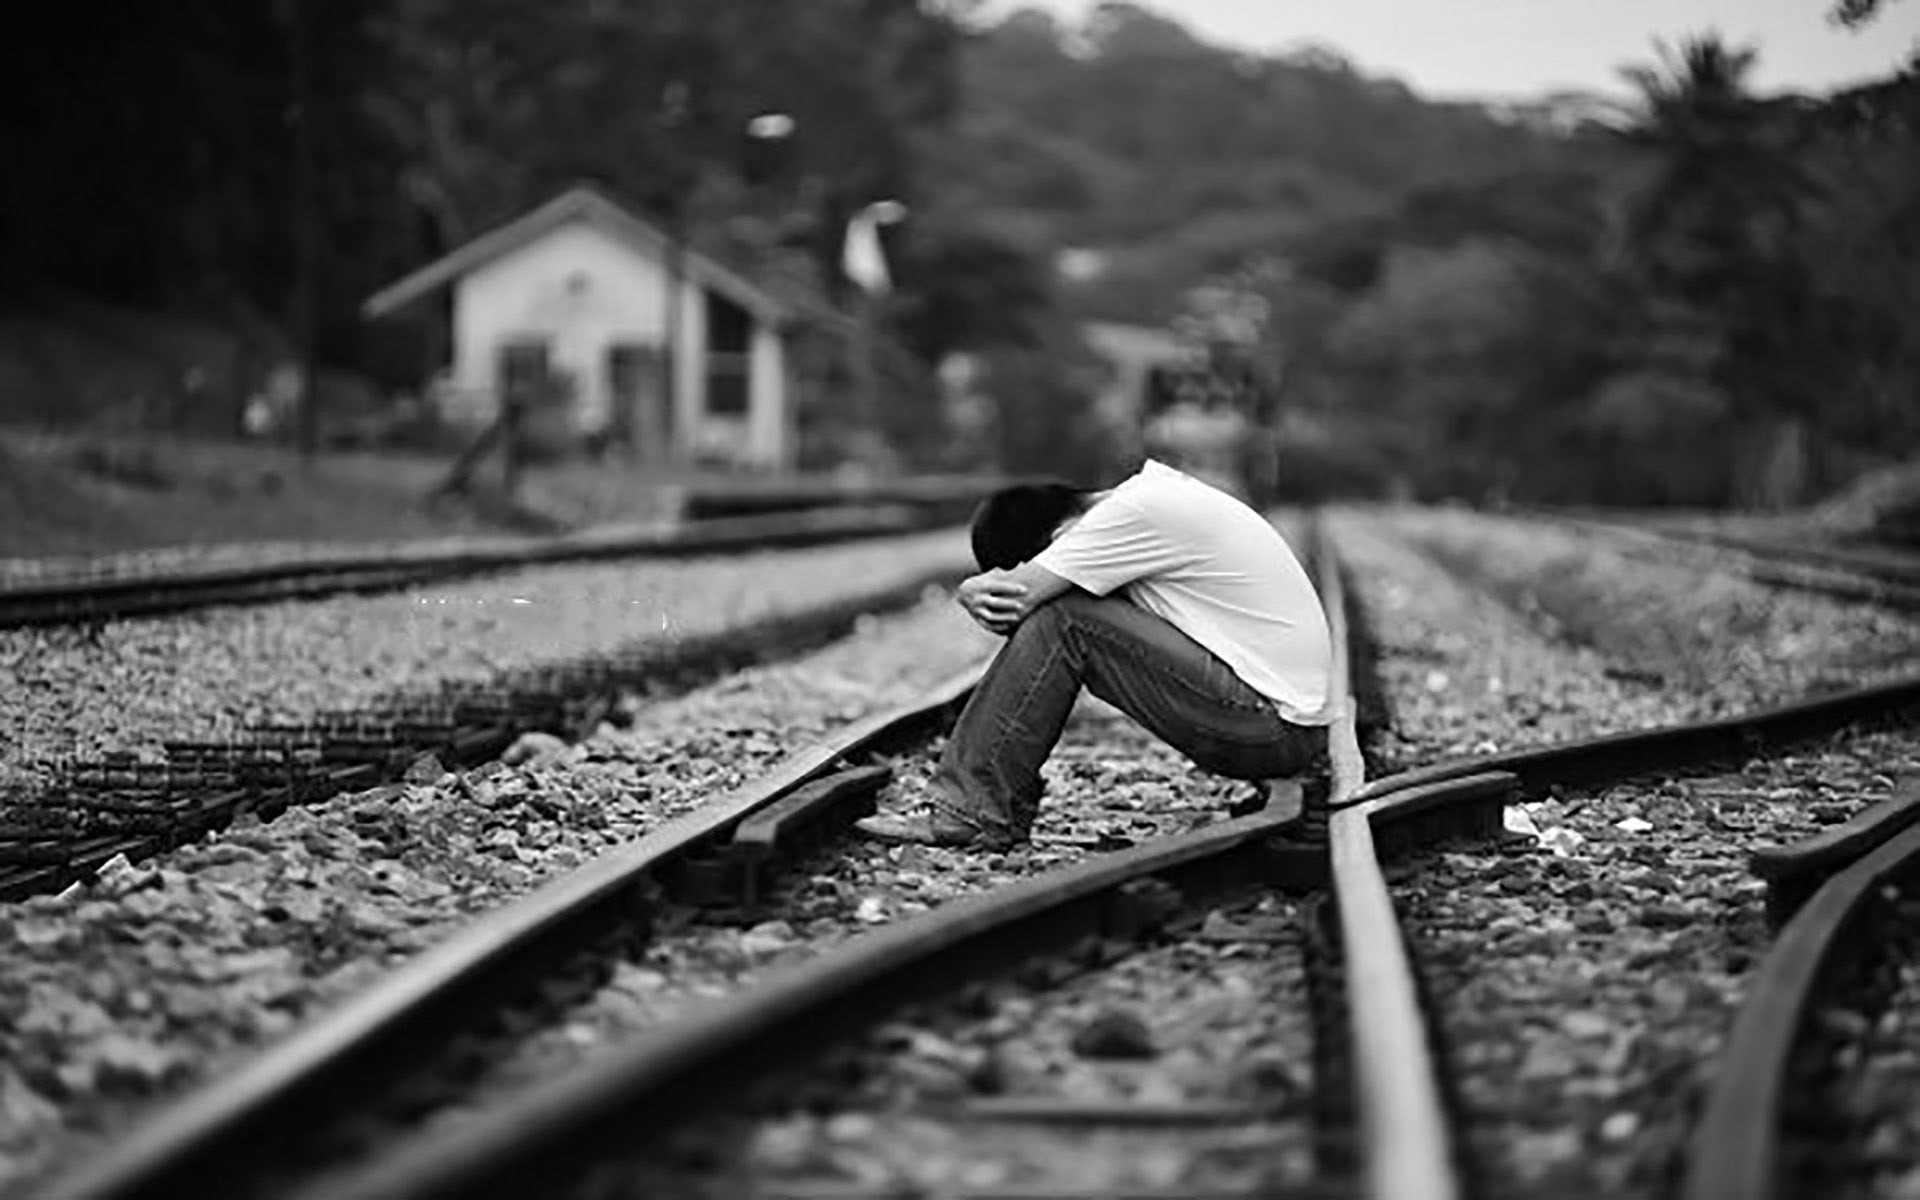 Ảnh buồn – Tổng hợp 100+ hình ảnh buồn, cô đơn cực đẹp